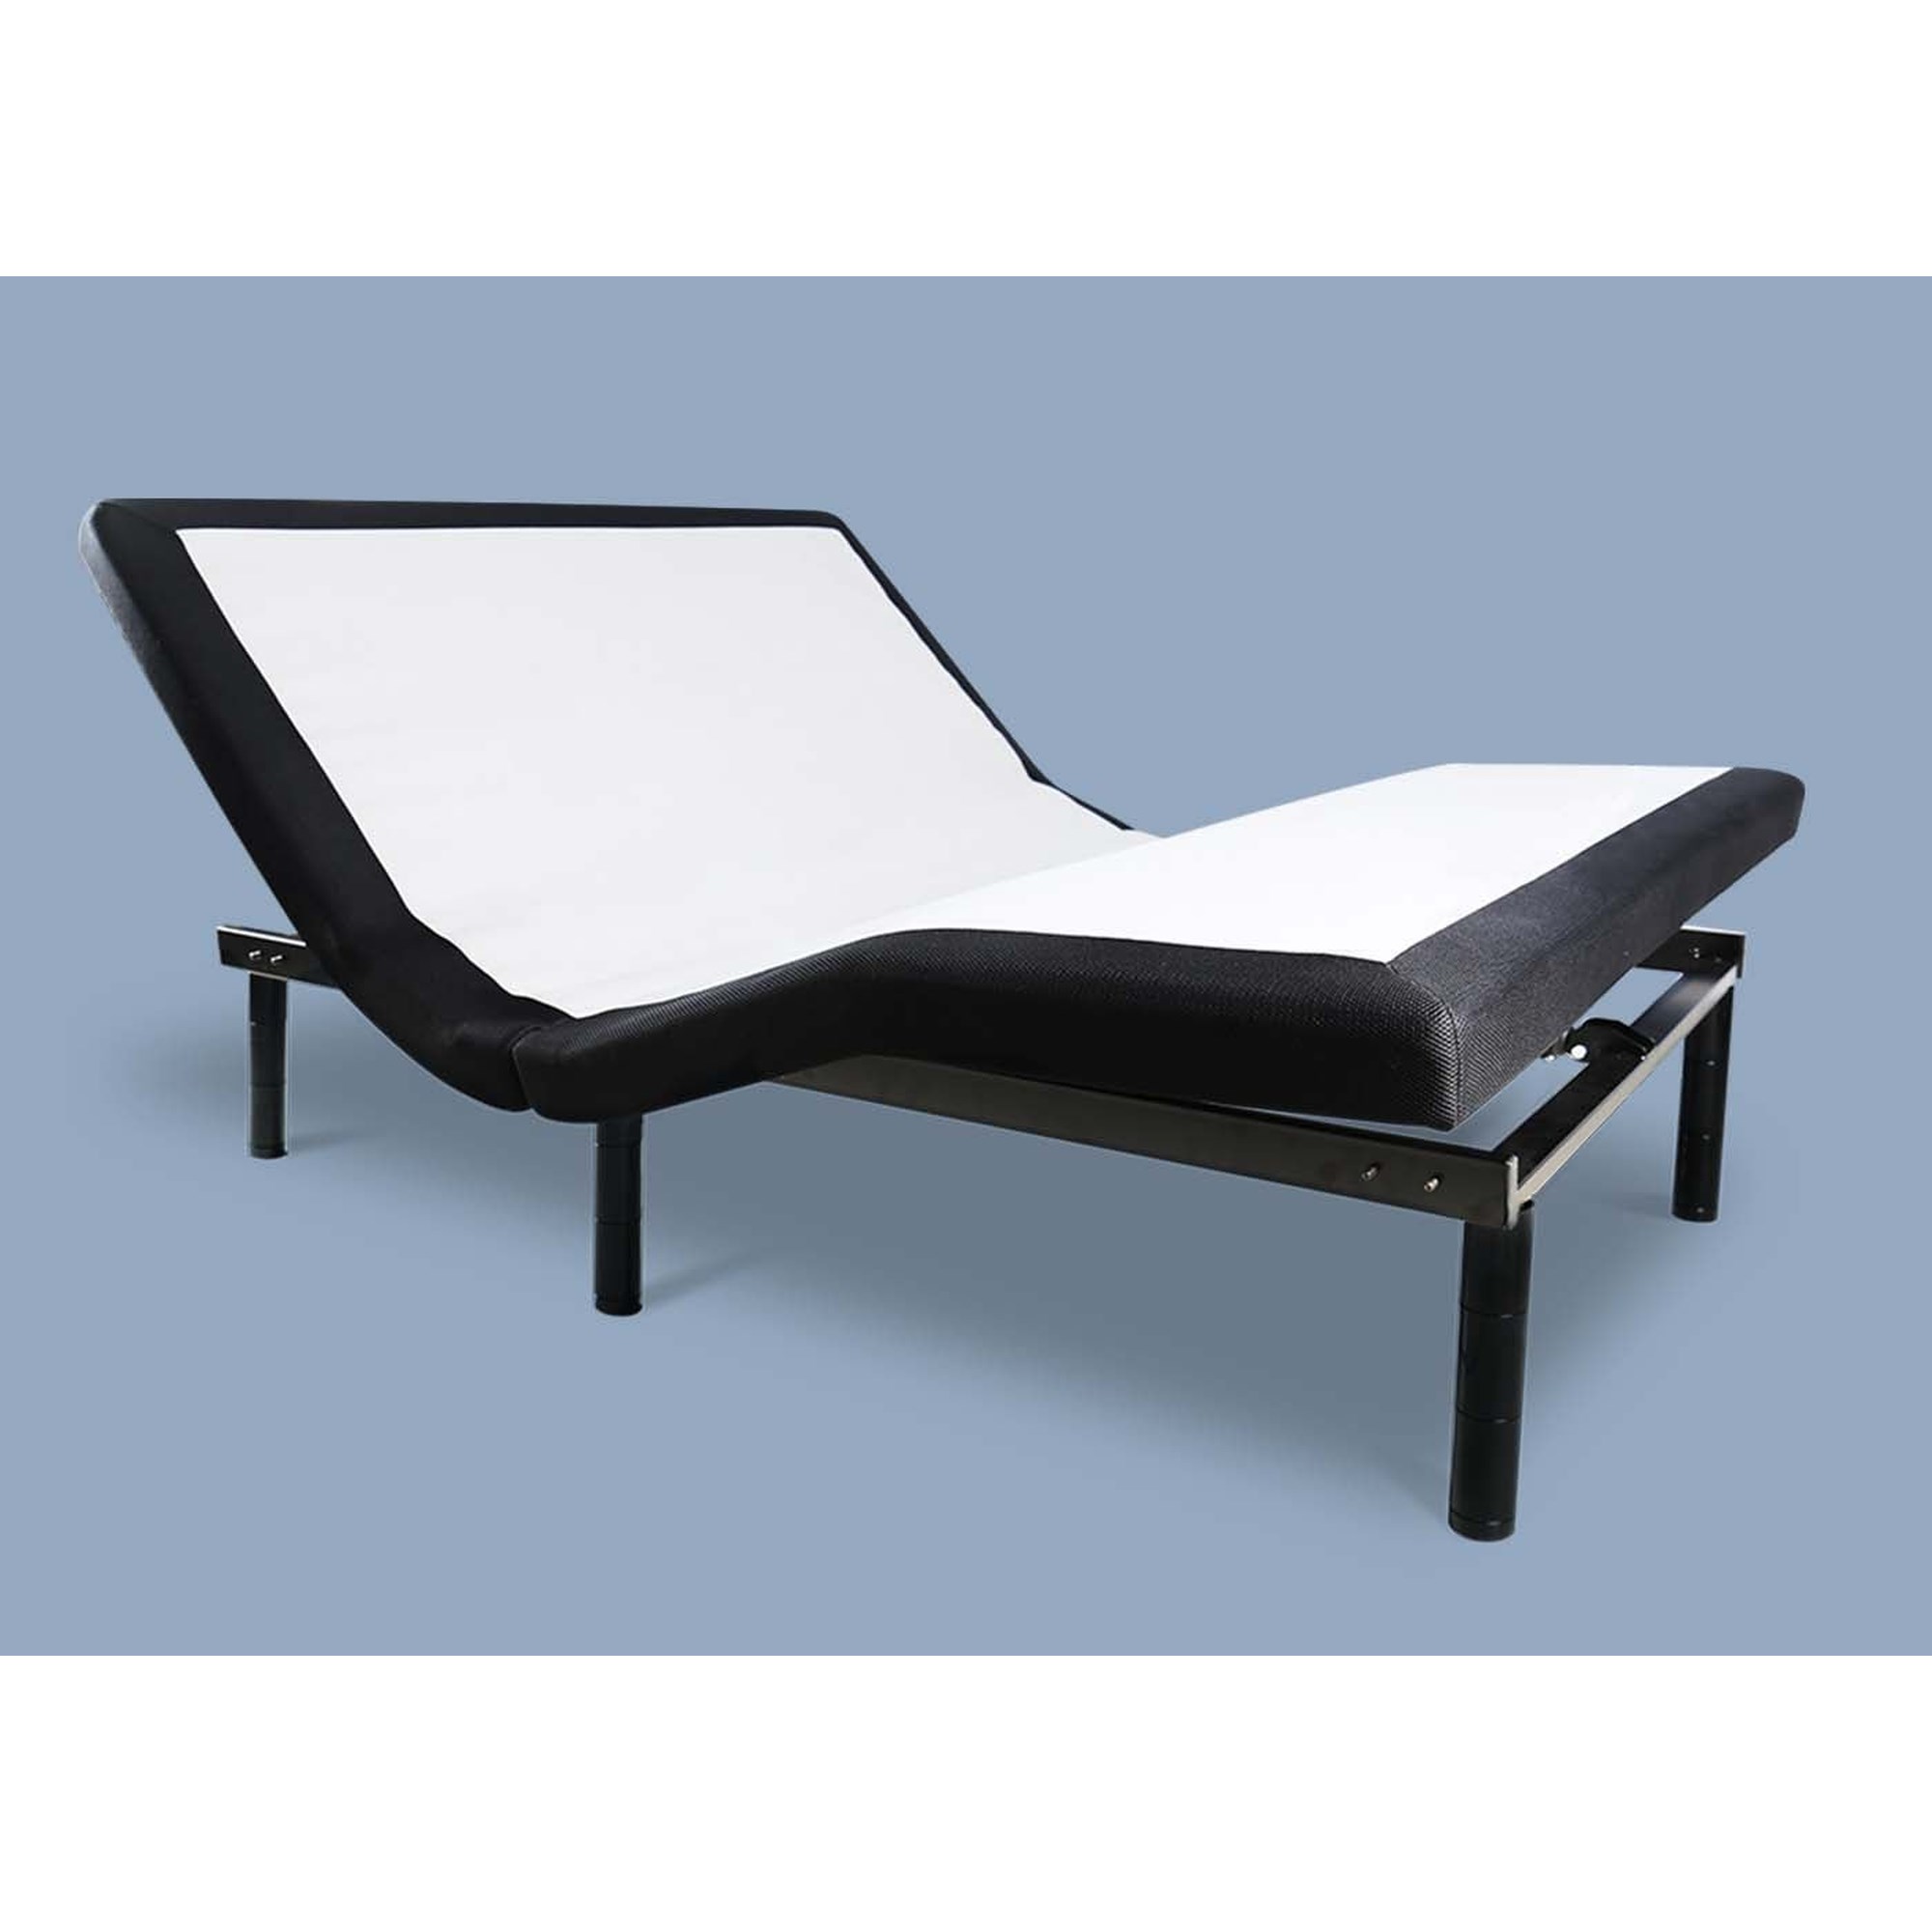 Adjustable Base Smart Bed Frame Adjustable Base Smart Bed Frame-USA: Twin XL